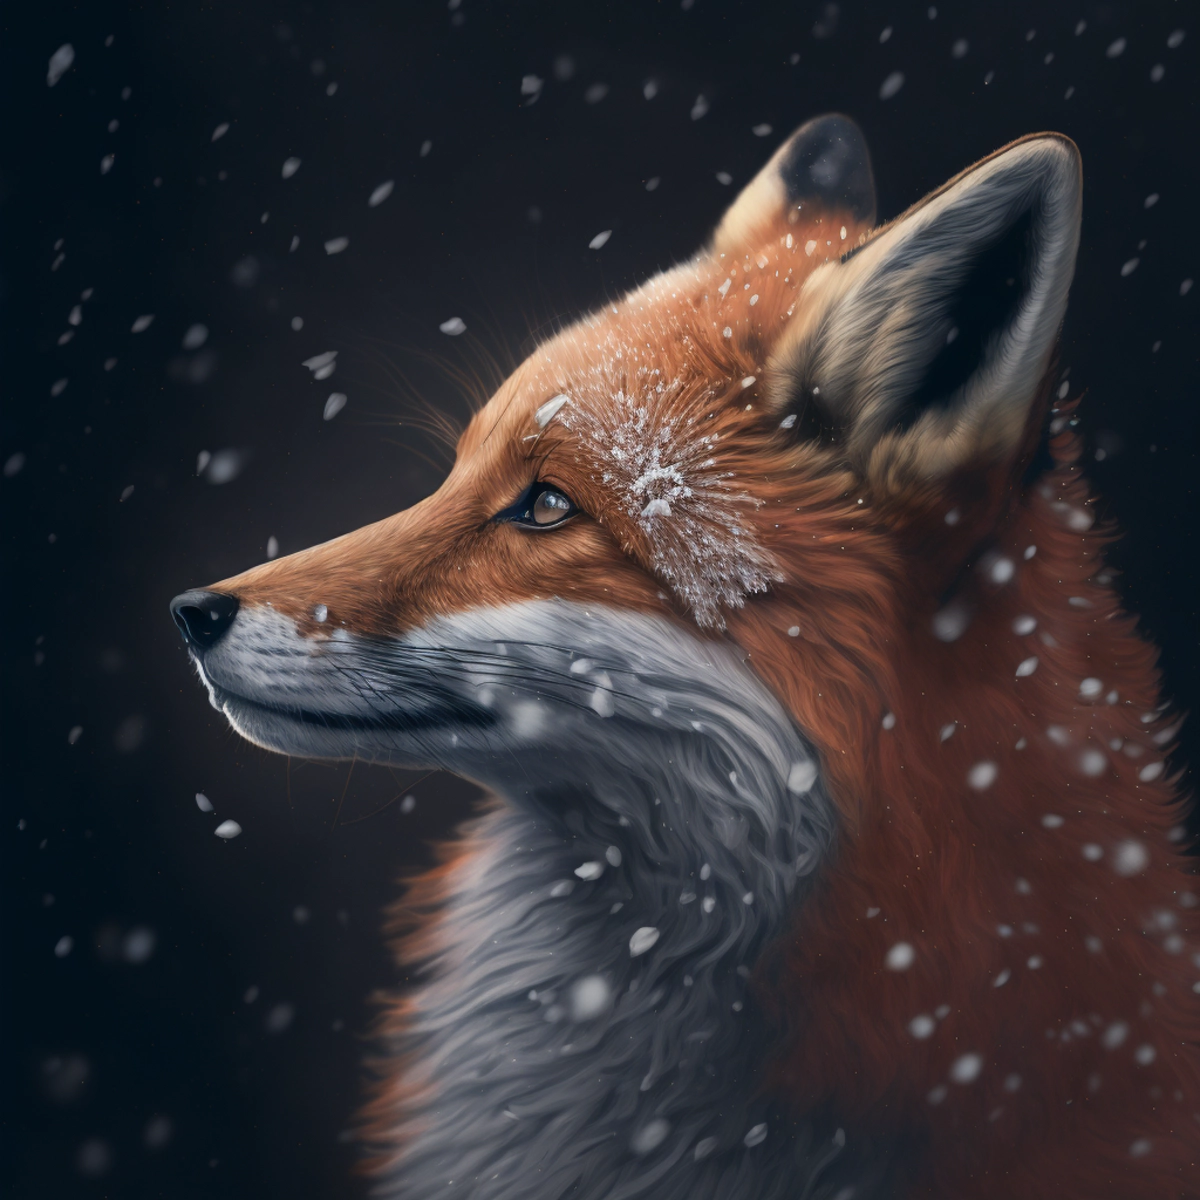 Un portrait en gros plan d'un renard curieux, avec des flocons de neige reposant sur sa fourrure